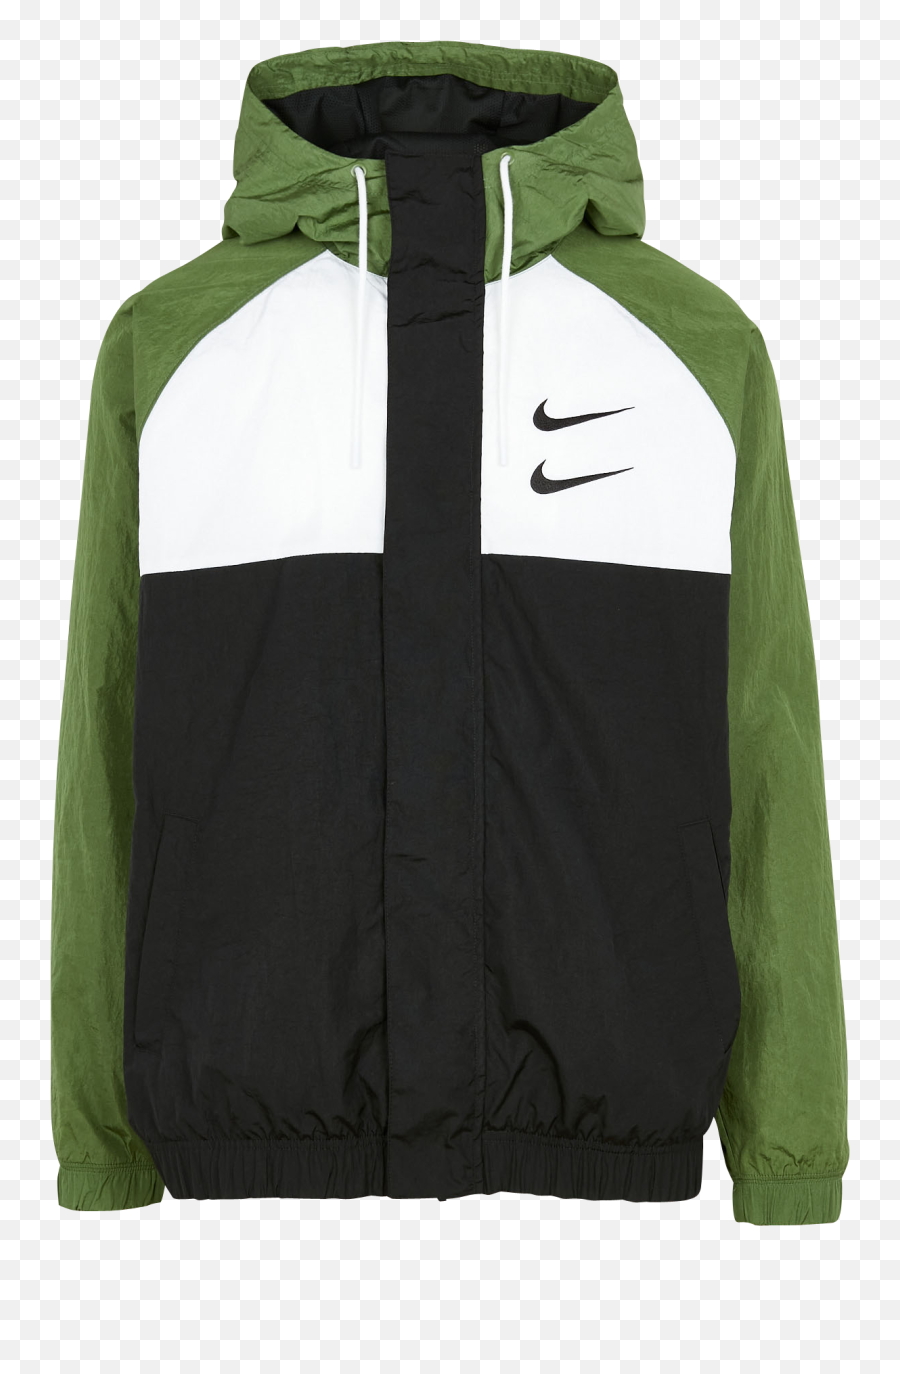 Nike Green And Black Hoodie Online - Veste Nike Homme Verte Png,Nike Sb Icon Full Zip Hoodie